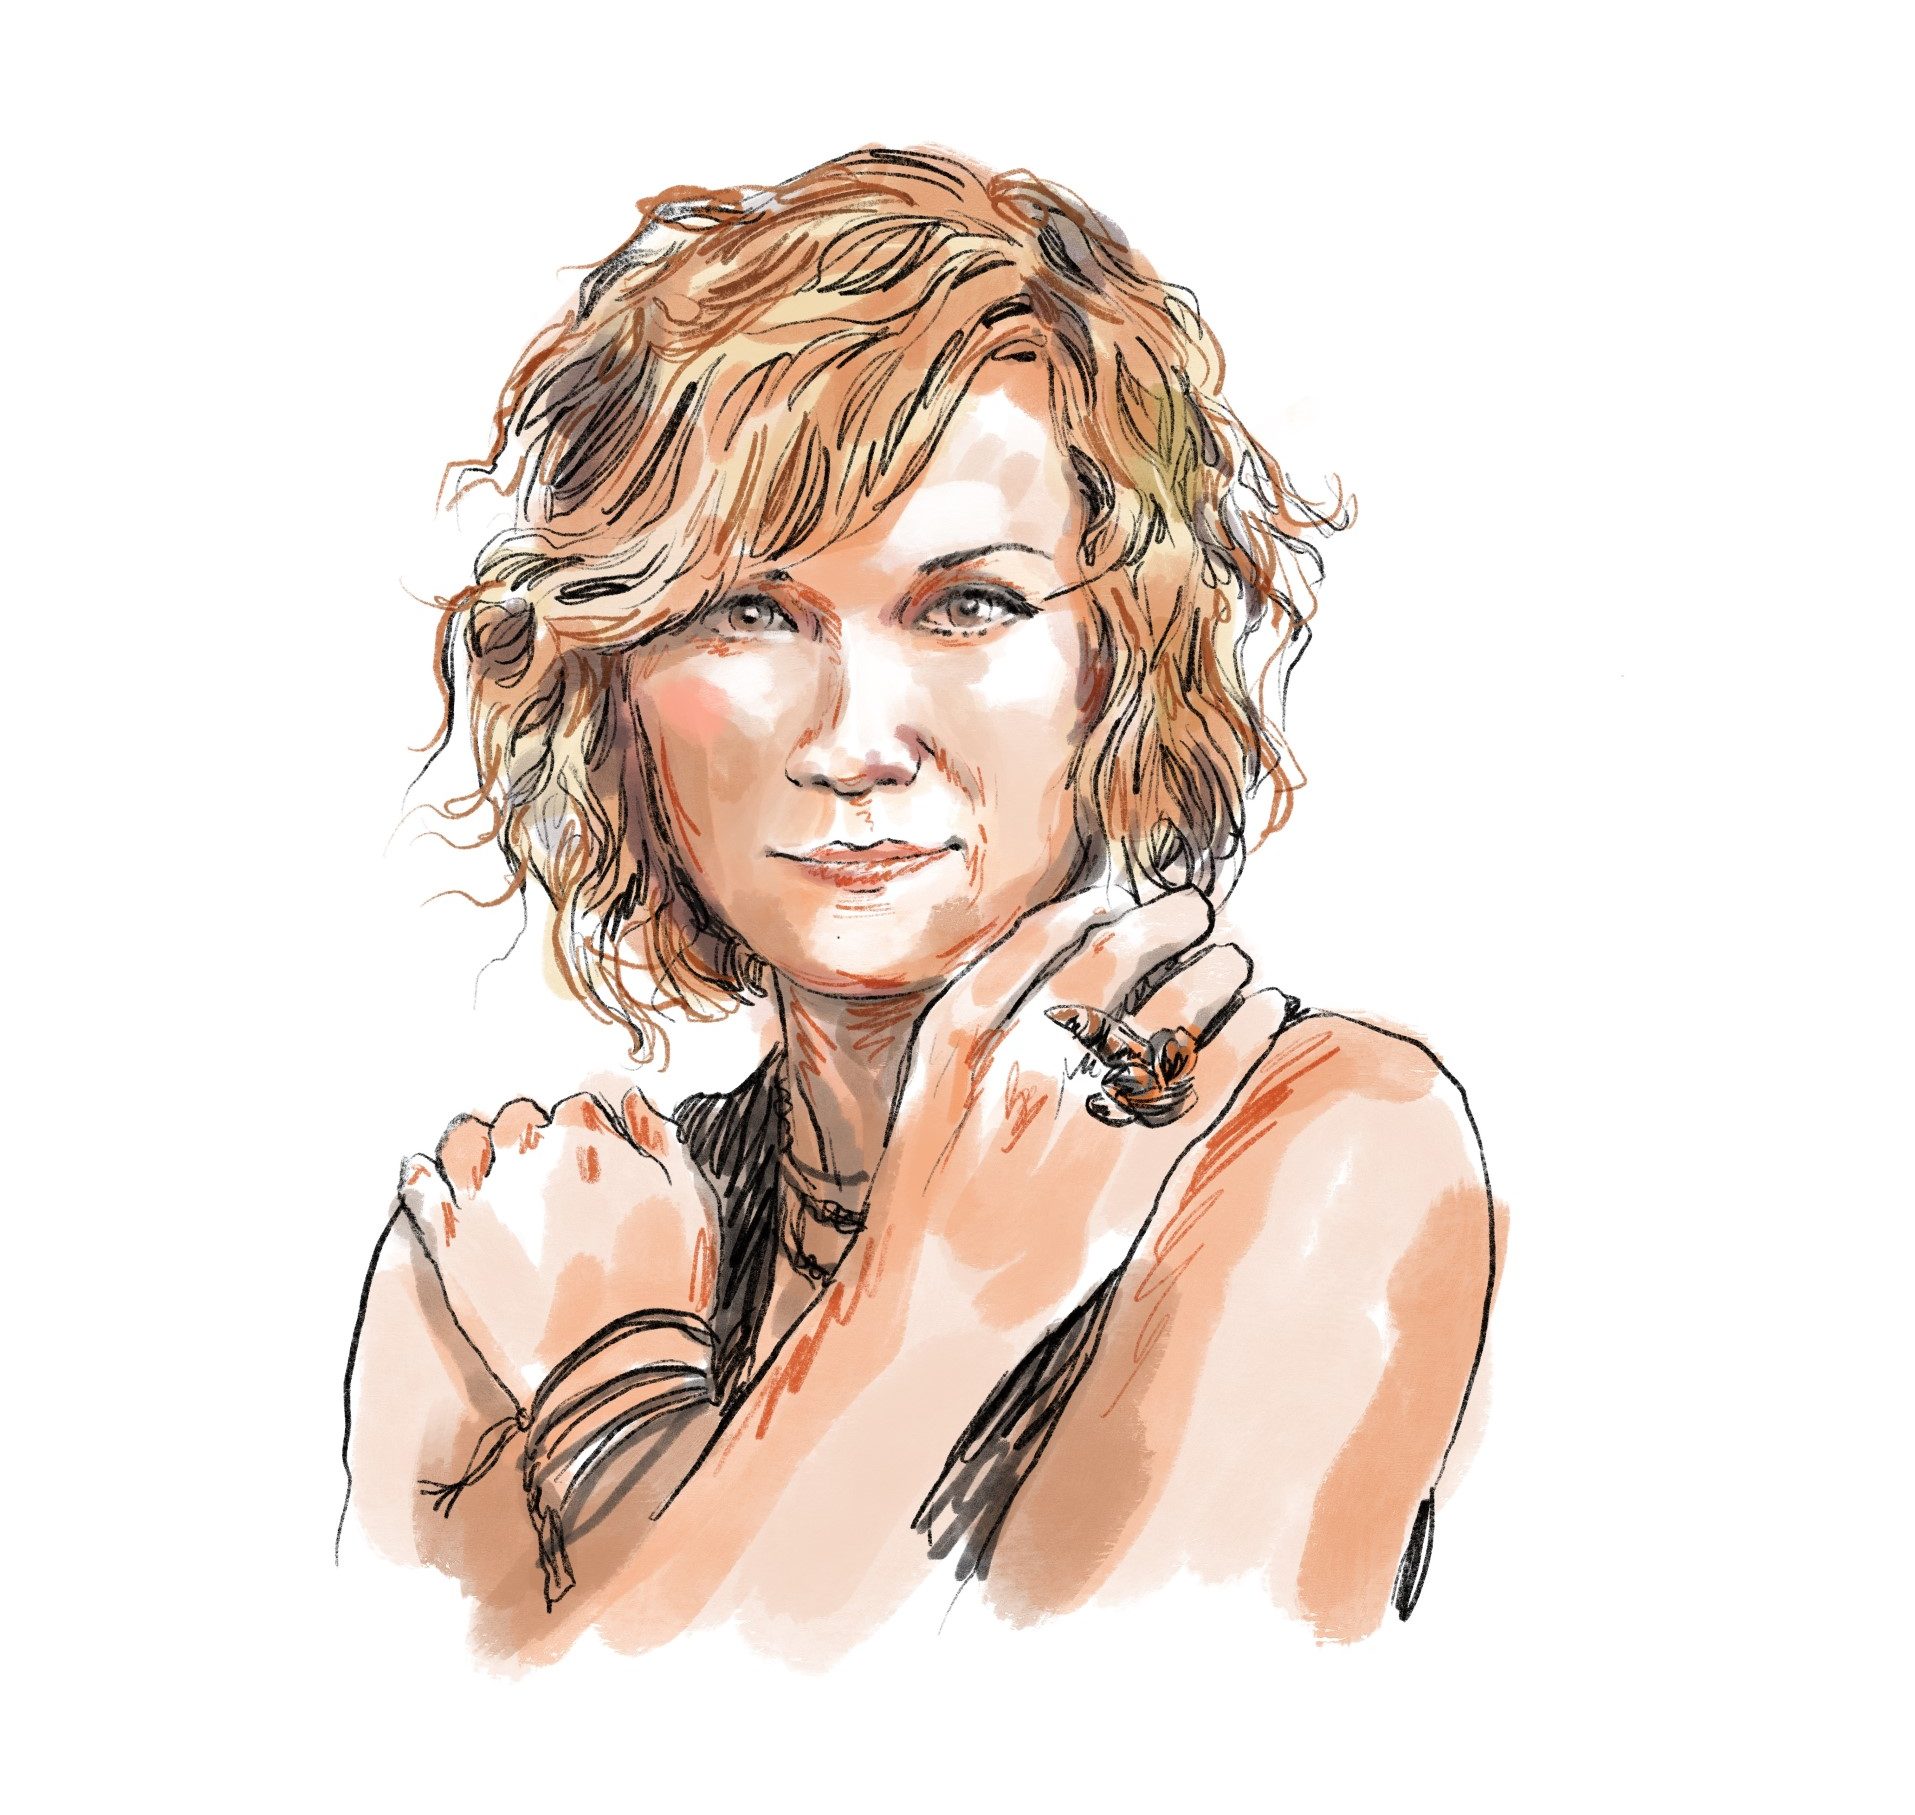 Illustration of Jennifer Nettles headshot against a white background.